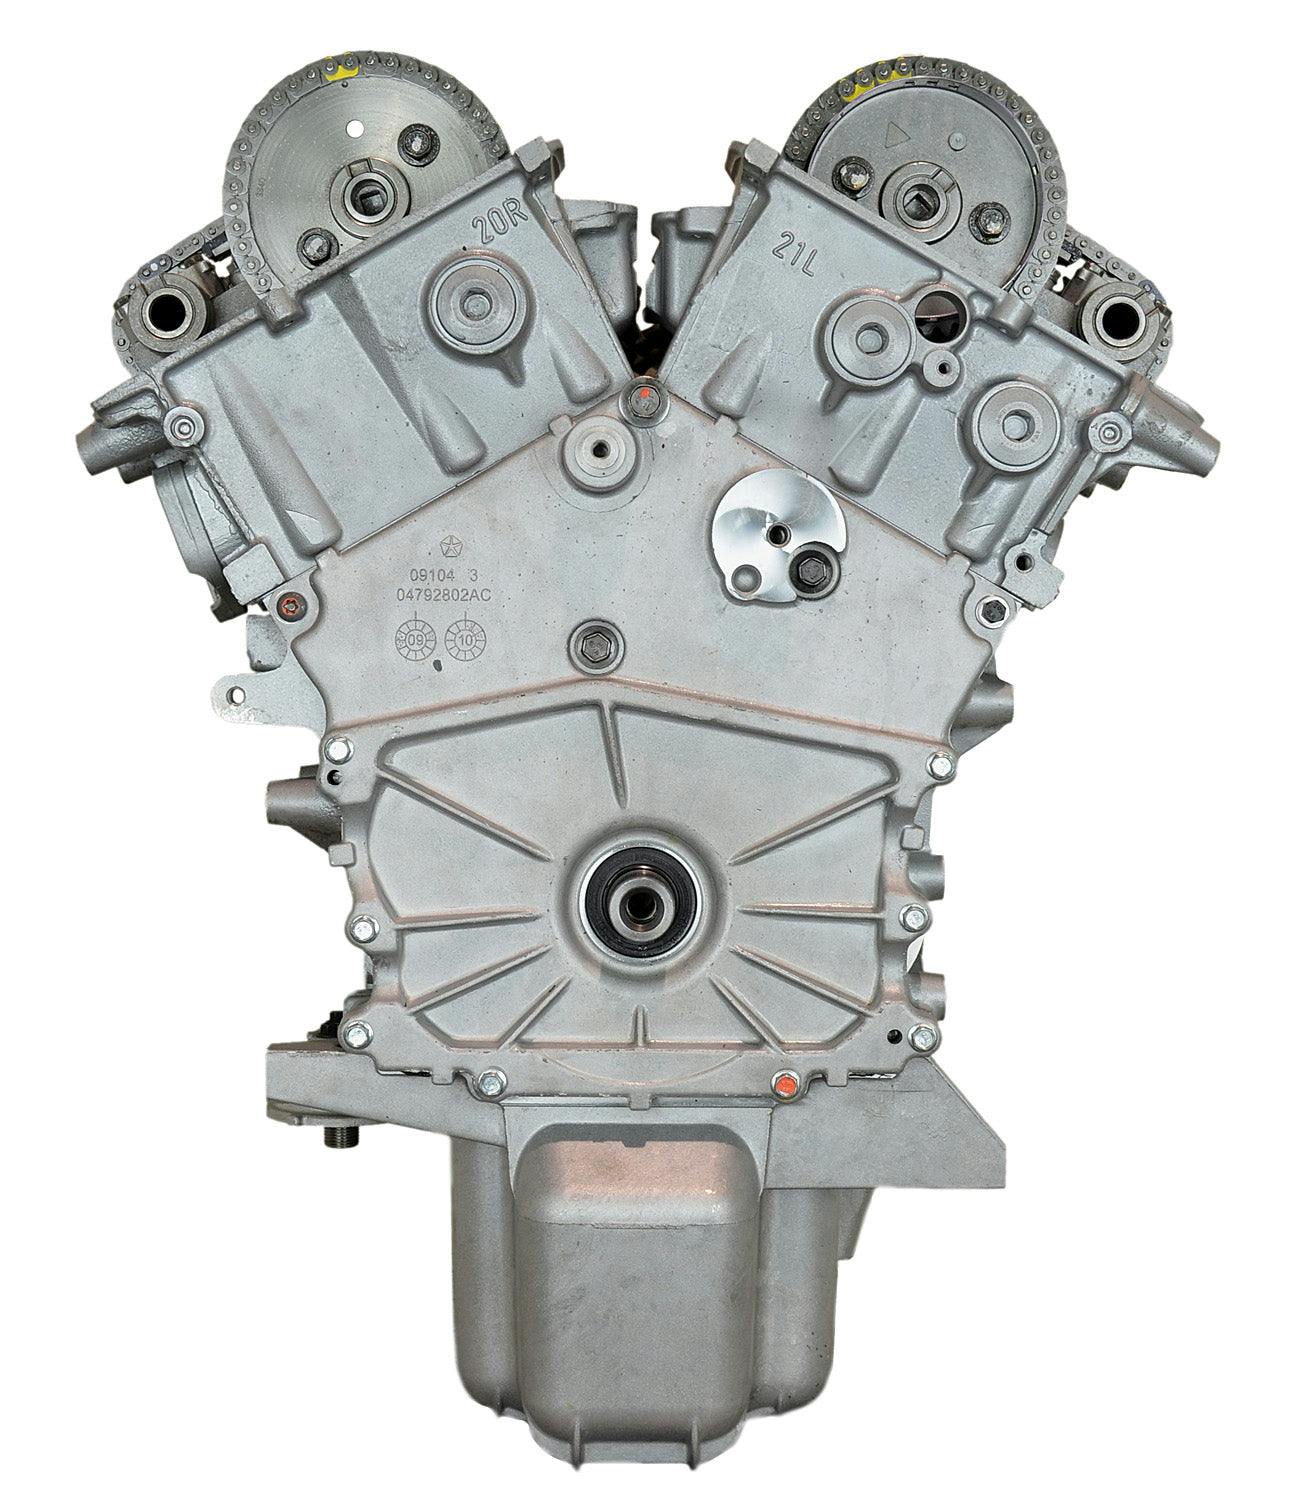 2.7L V6 Engine for 2006-2010 Chrysler 300/Dodge Charger, Magnum